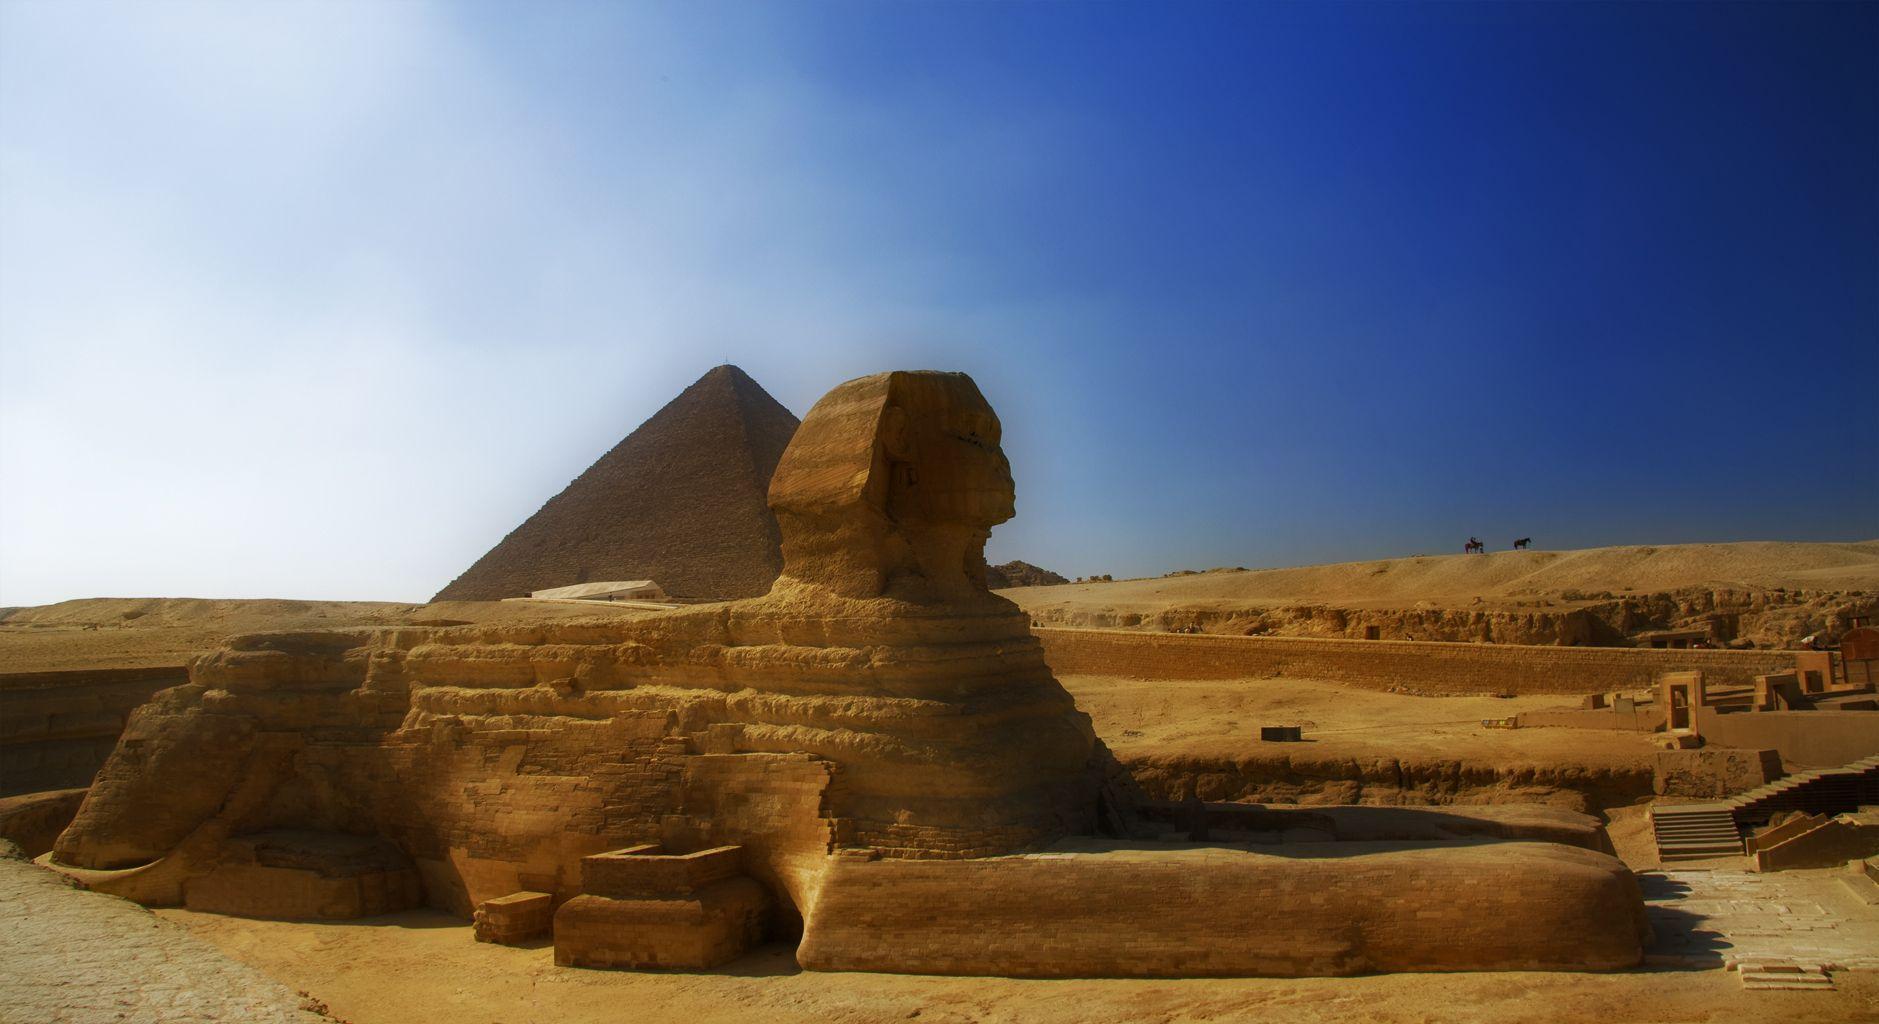 Hd Wallpaper Sphinx Cairo Egypt 1600 X 1200 393 Kb Jpeg. HD